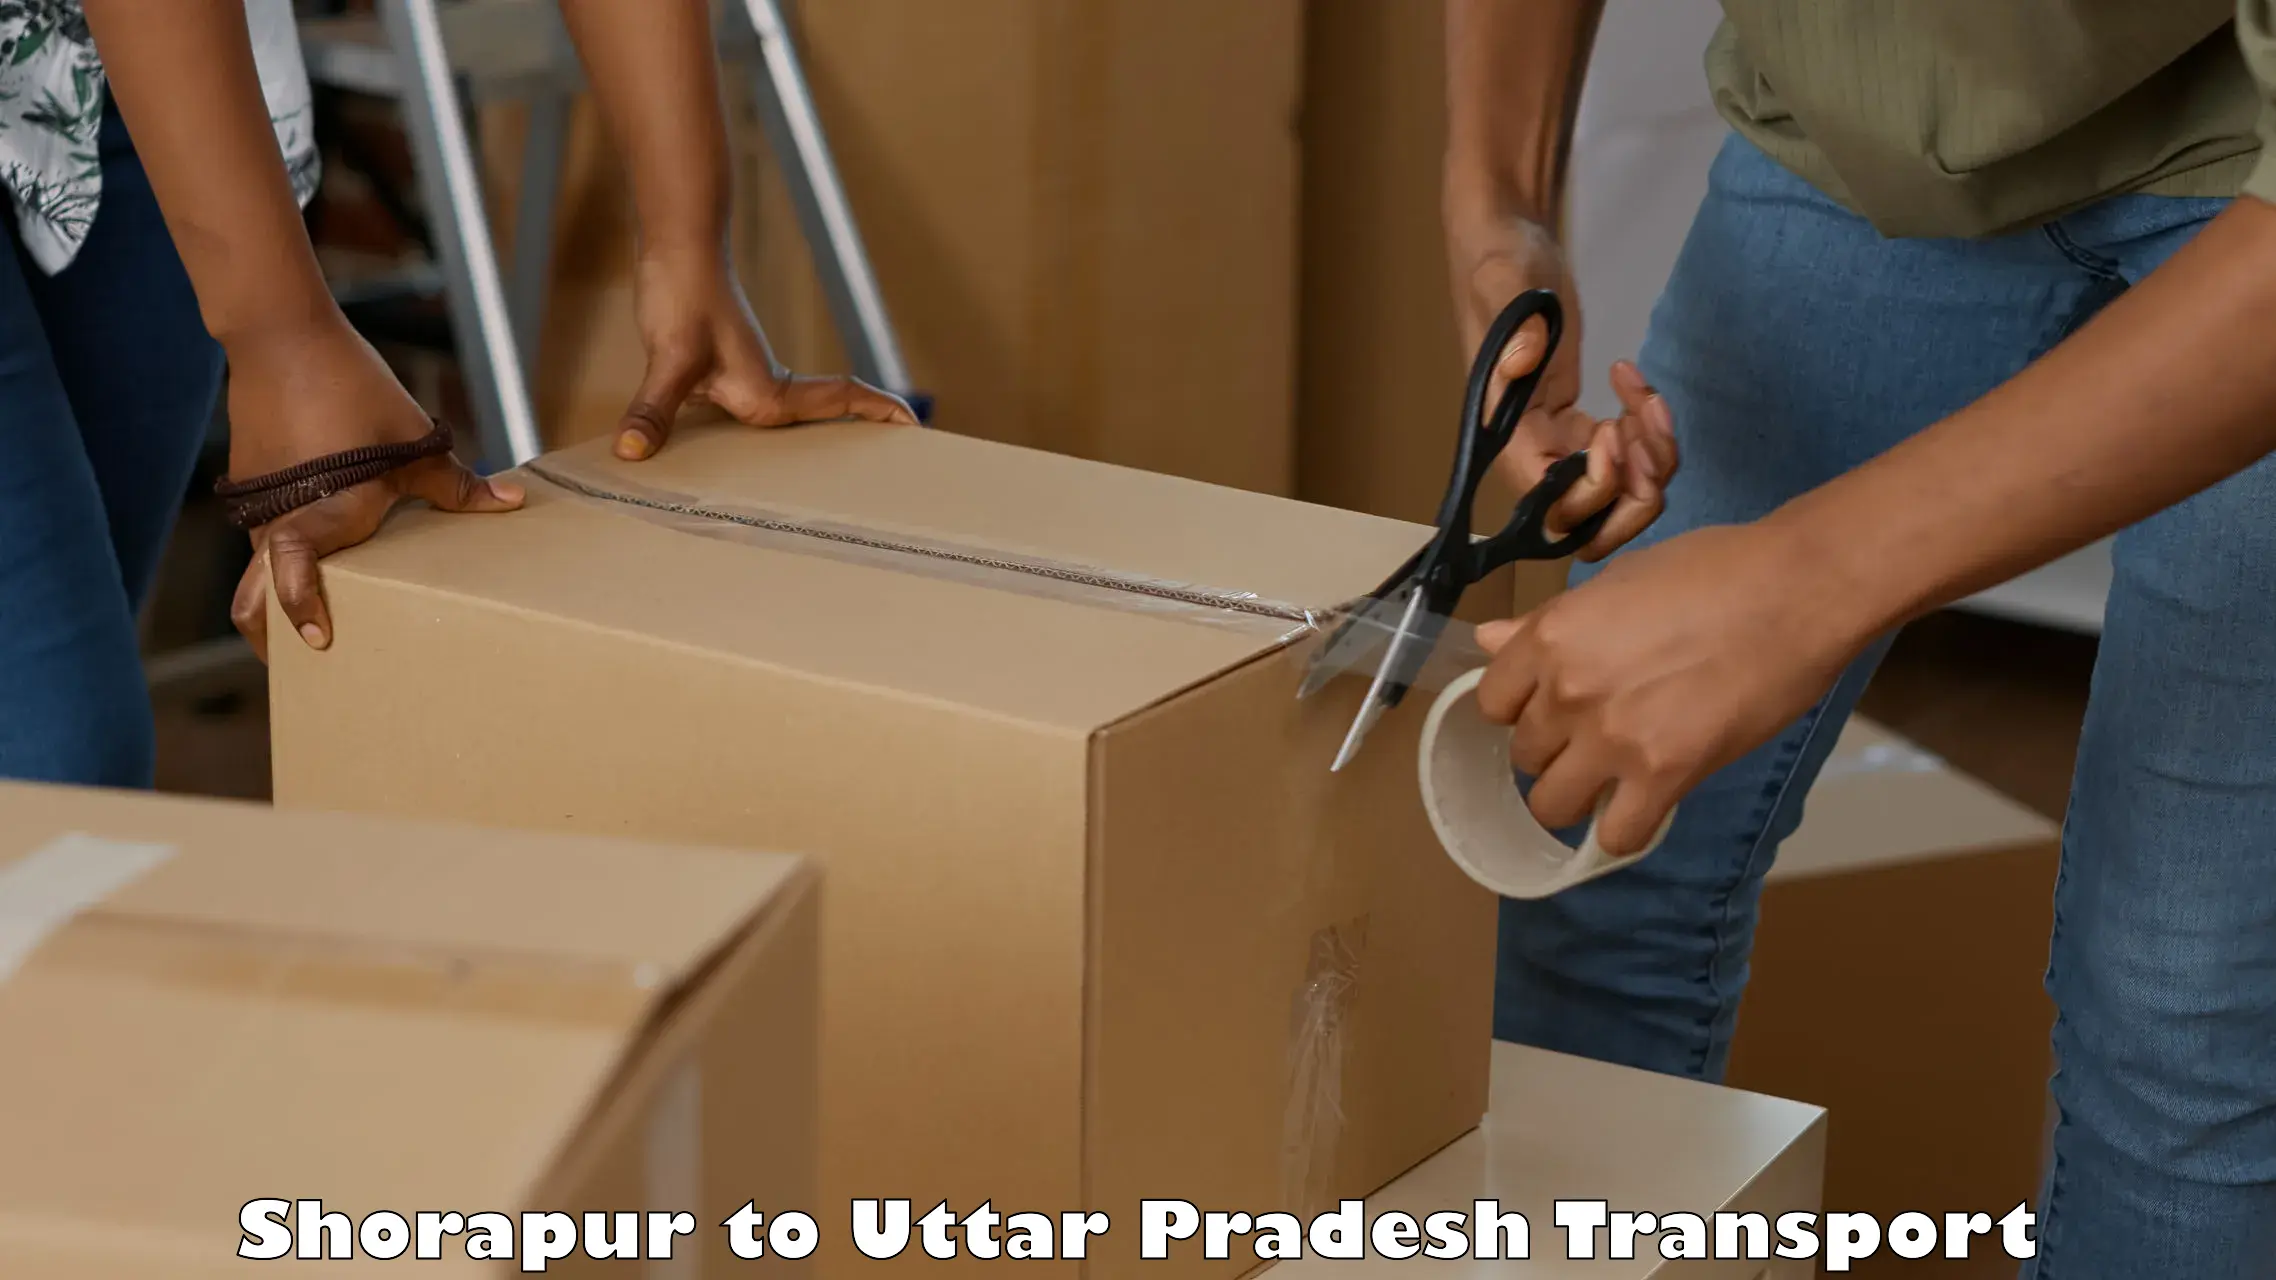 International cargo transportation services Shorapur to Uttar Pradesh